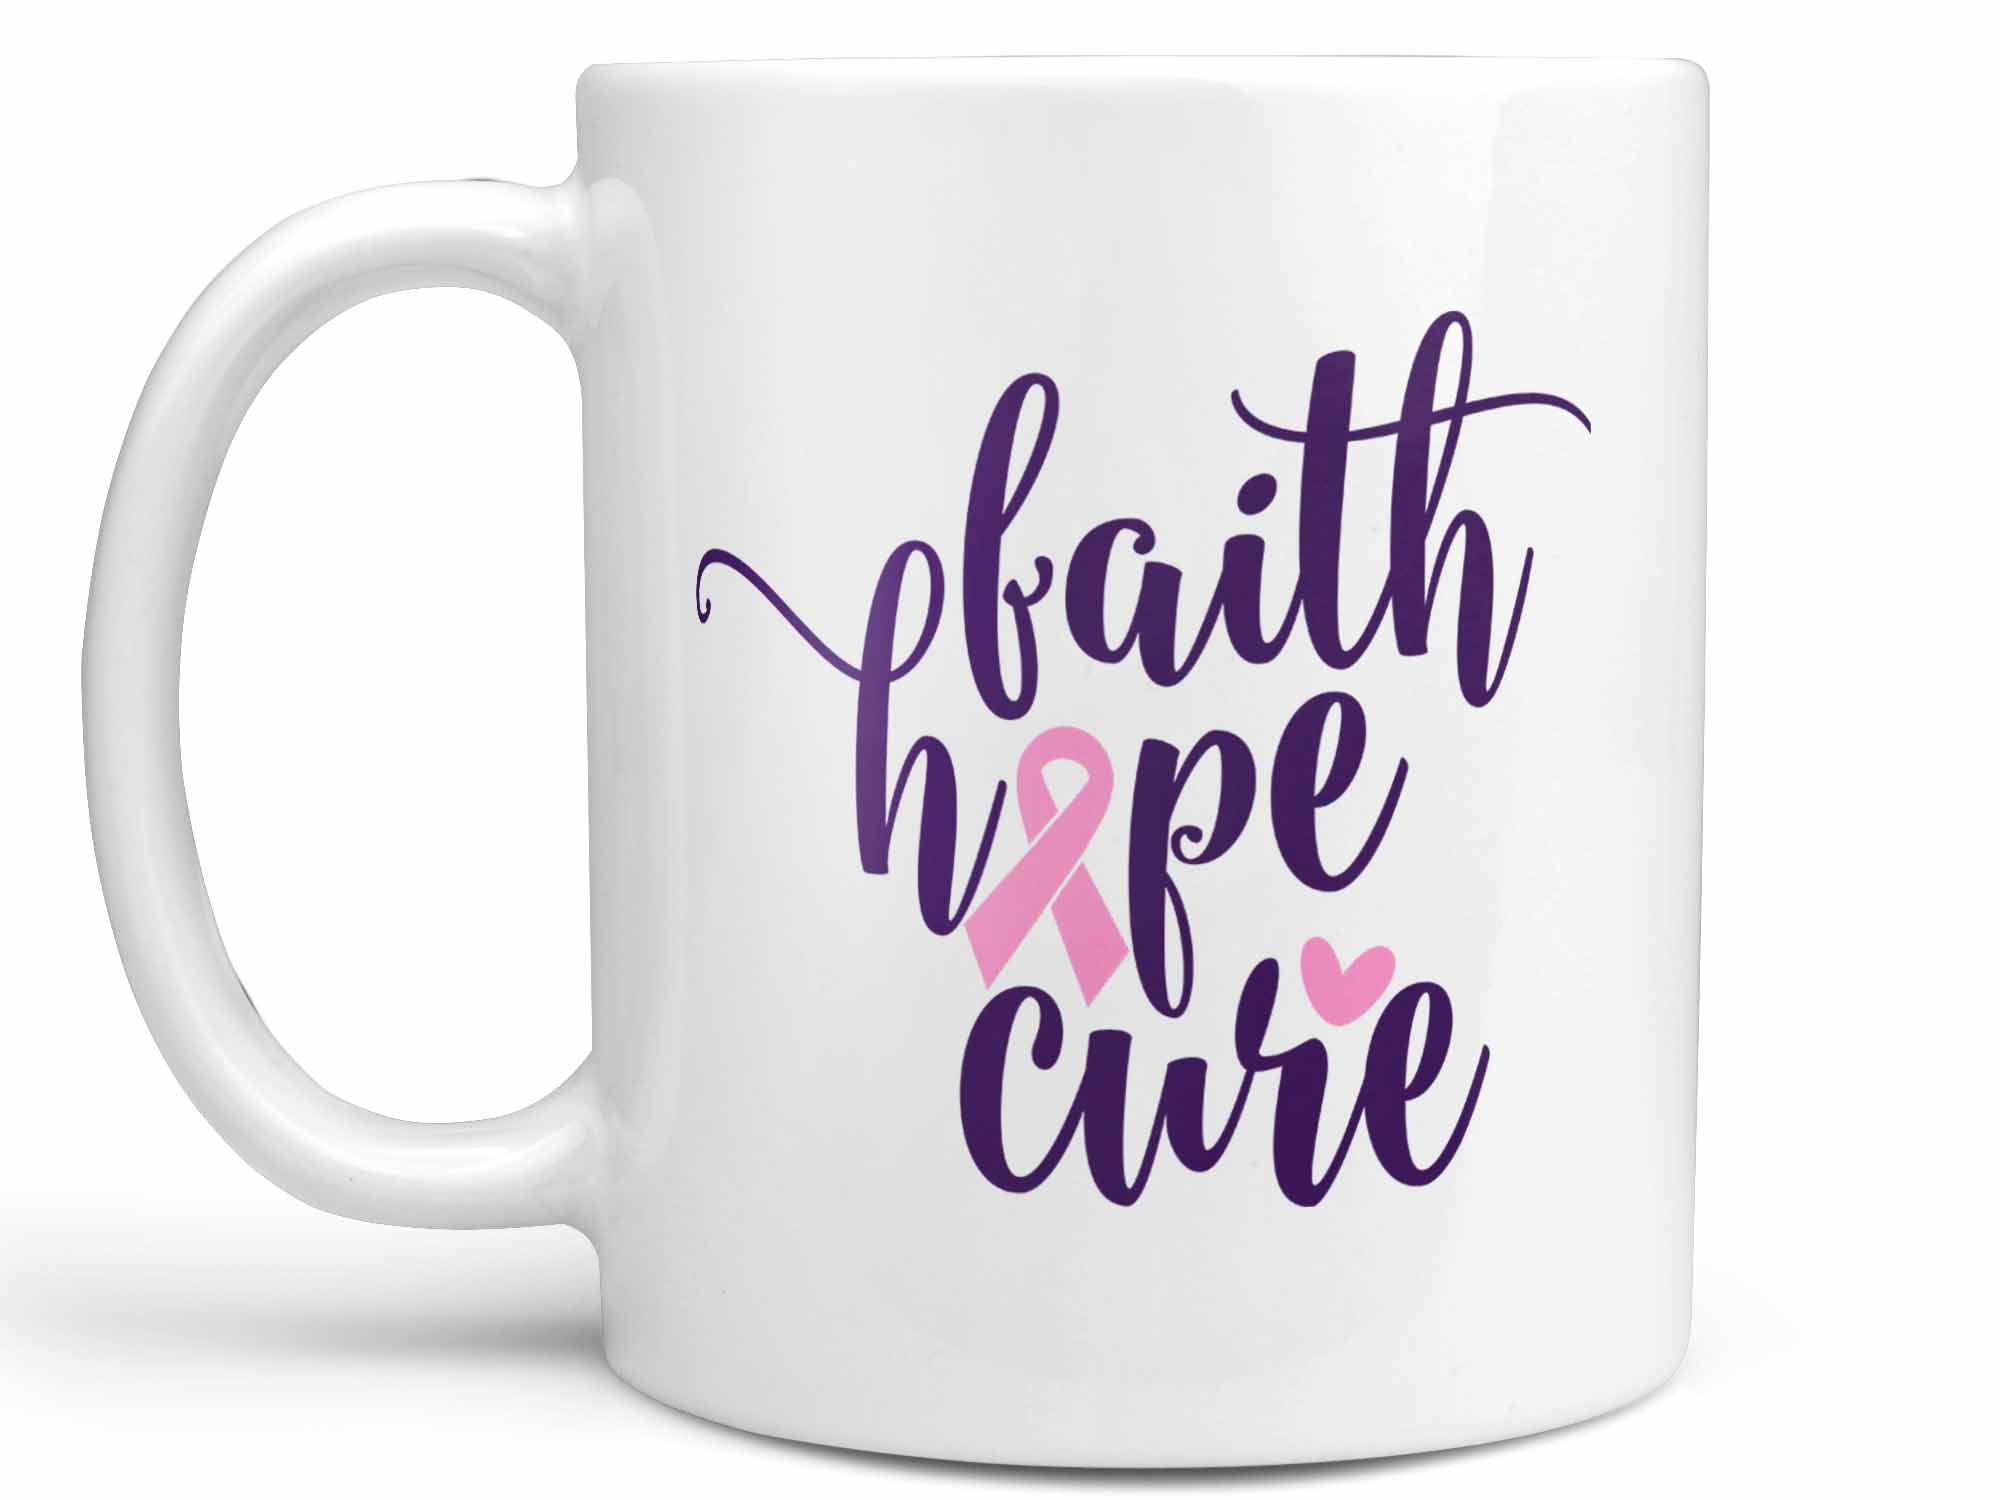 Faith Hope Cure Coffee Mug,Coffee Mugs Never Lie,Coffee Mug